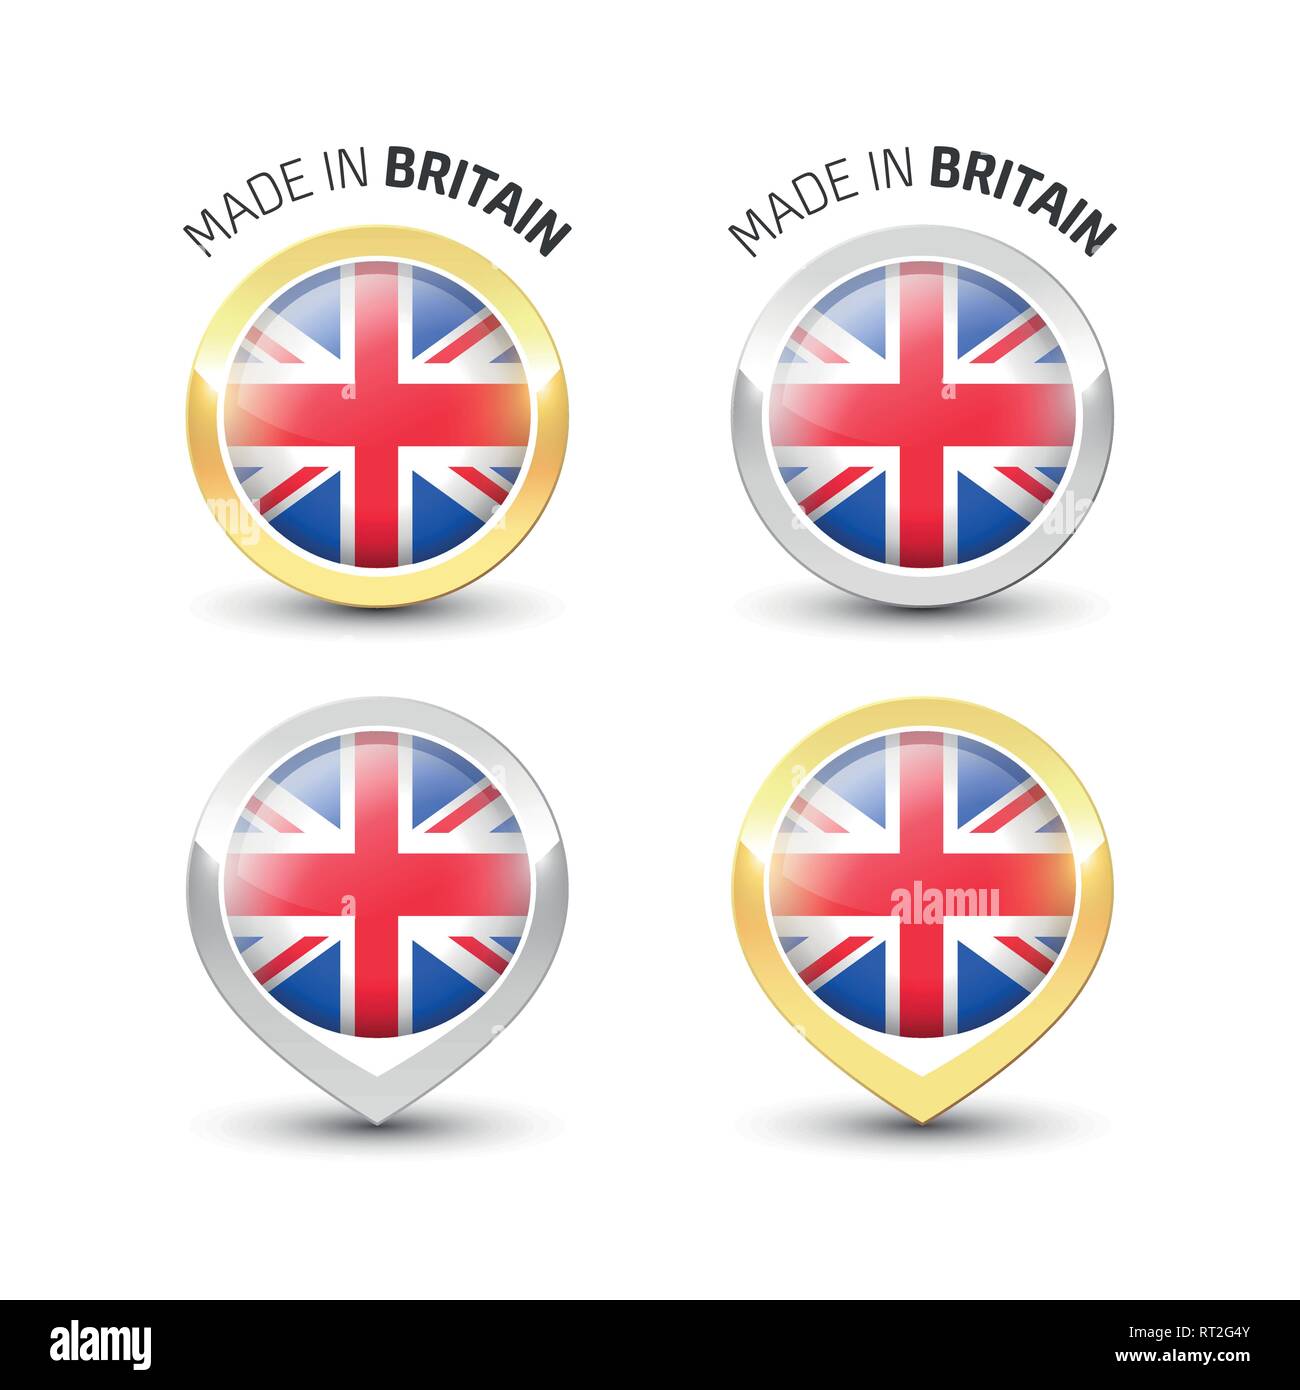 Realizzato in Gran Bretagna UK - etichetta di garanzia con la bandiera del Regno Unito all'interno del turno oro e argento icone. Illustrazione Vettoriale